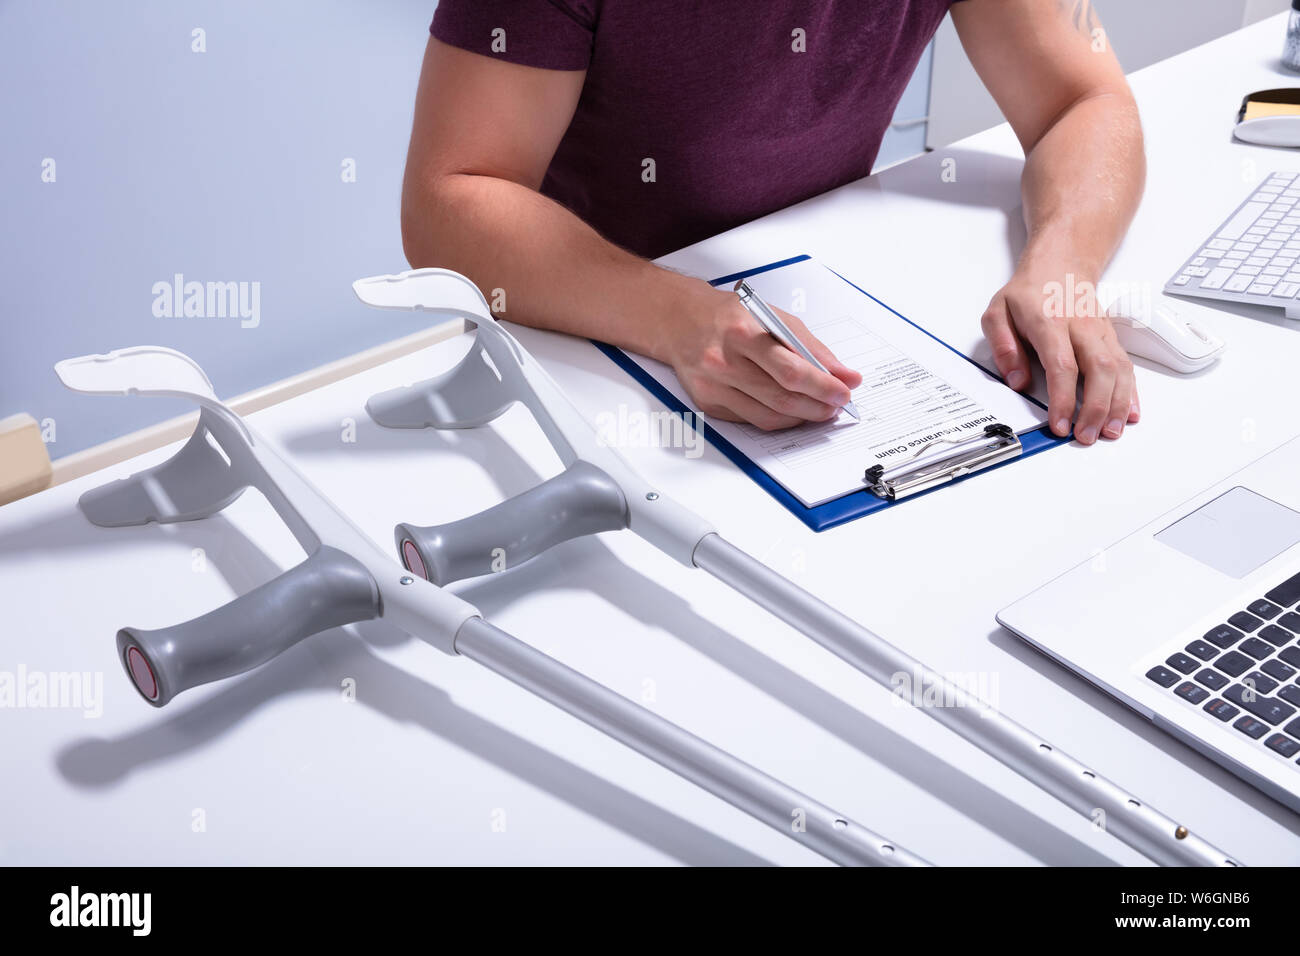 Disabili paziente maschio di assicurazione di riempimento secondo la rivendicazione formare sulla scrivania con le stampelle Foto Stock